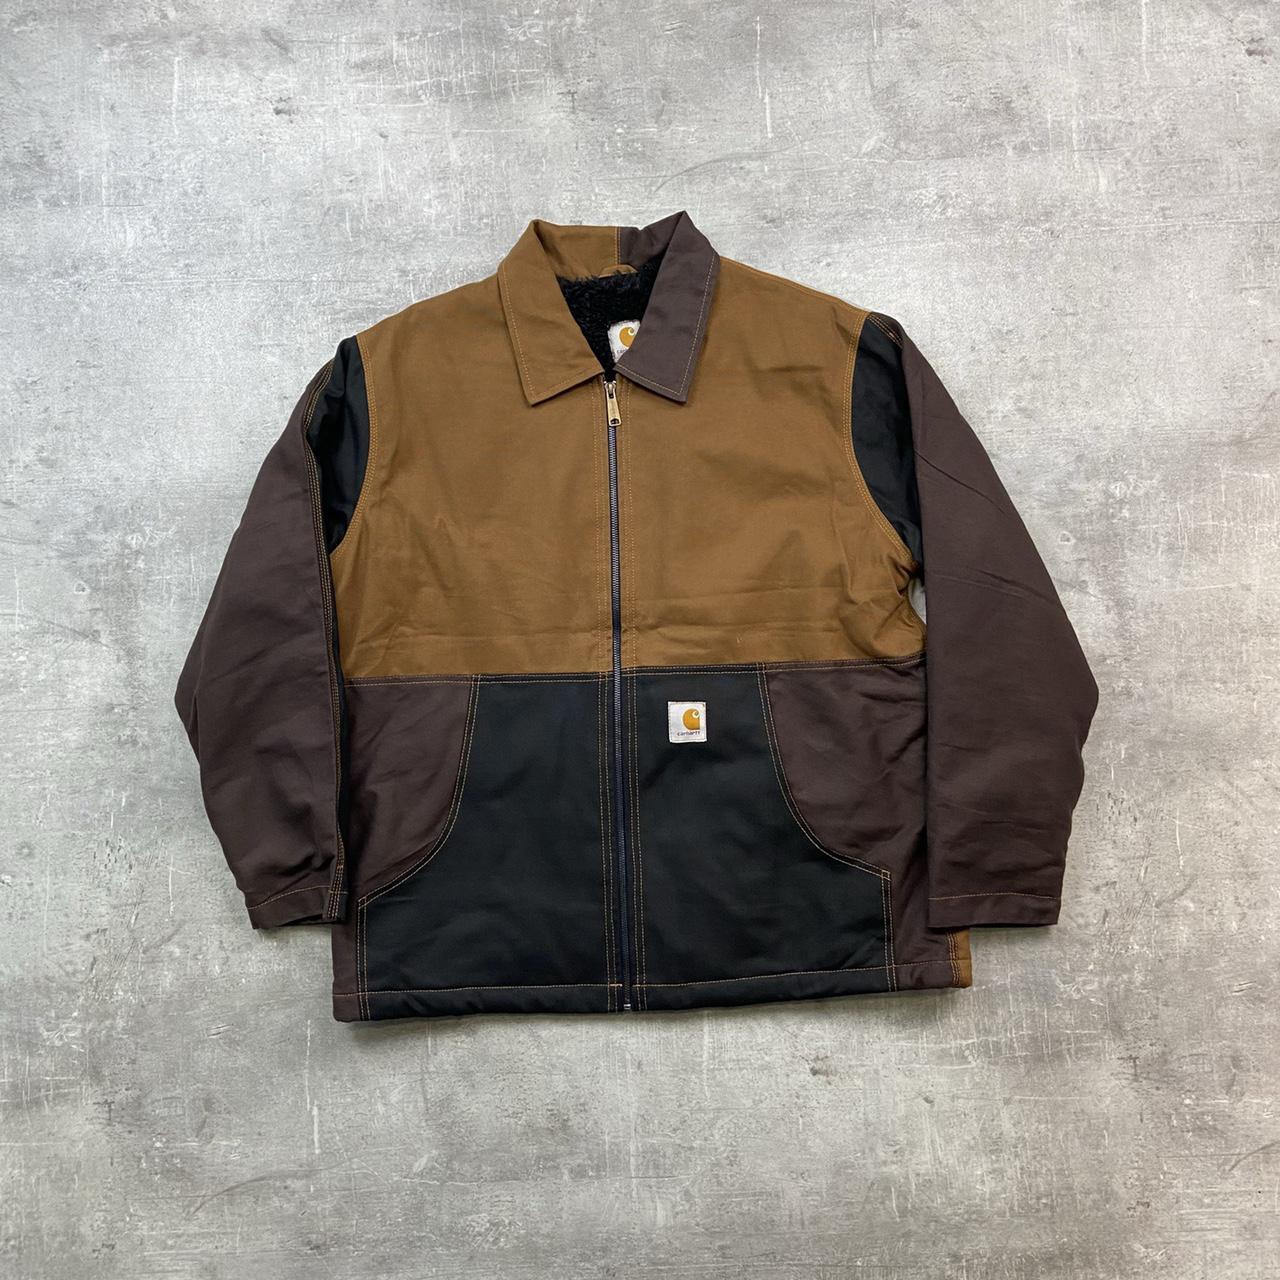 Vintage Carhartt rework jacket in brown and black... - Depop